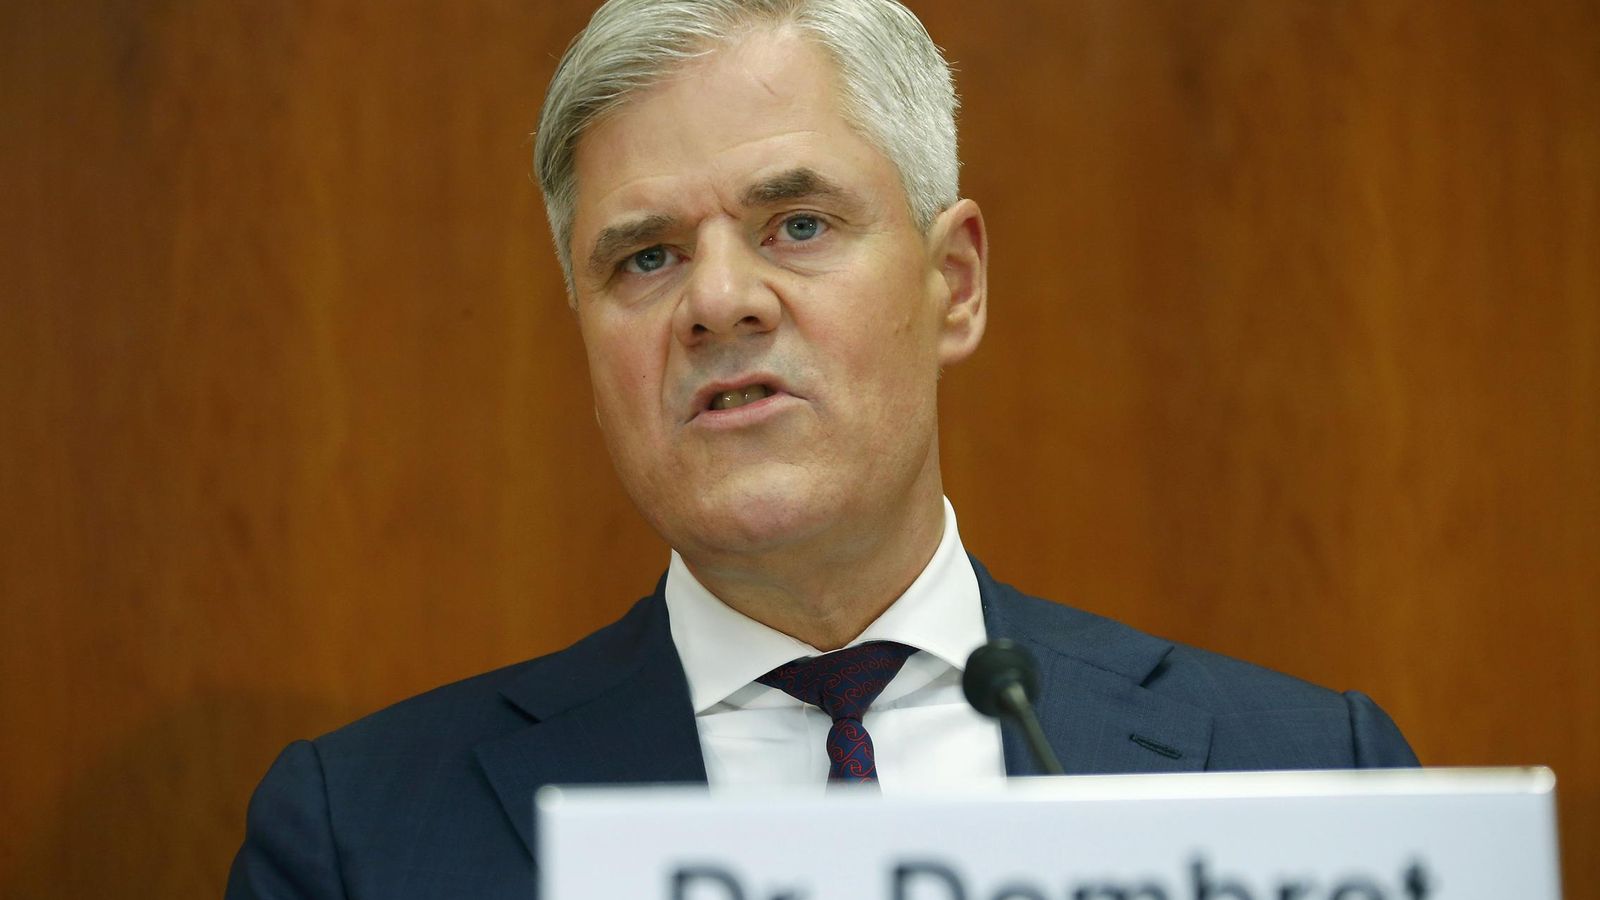 Foto: El responsable de supervisión bancaria y consejero del Bundesbank, Andreas Dombret. (Reuters)